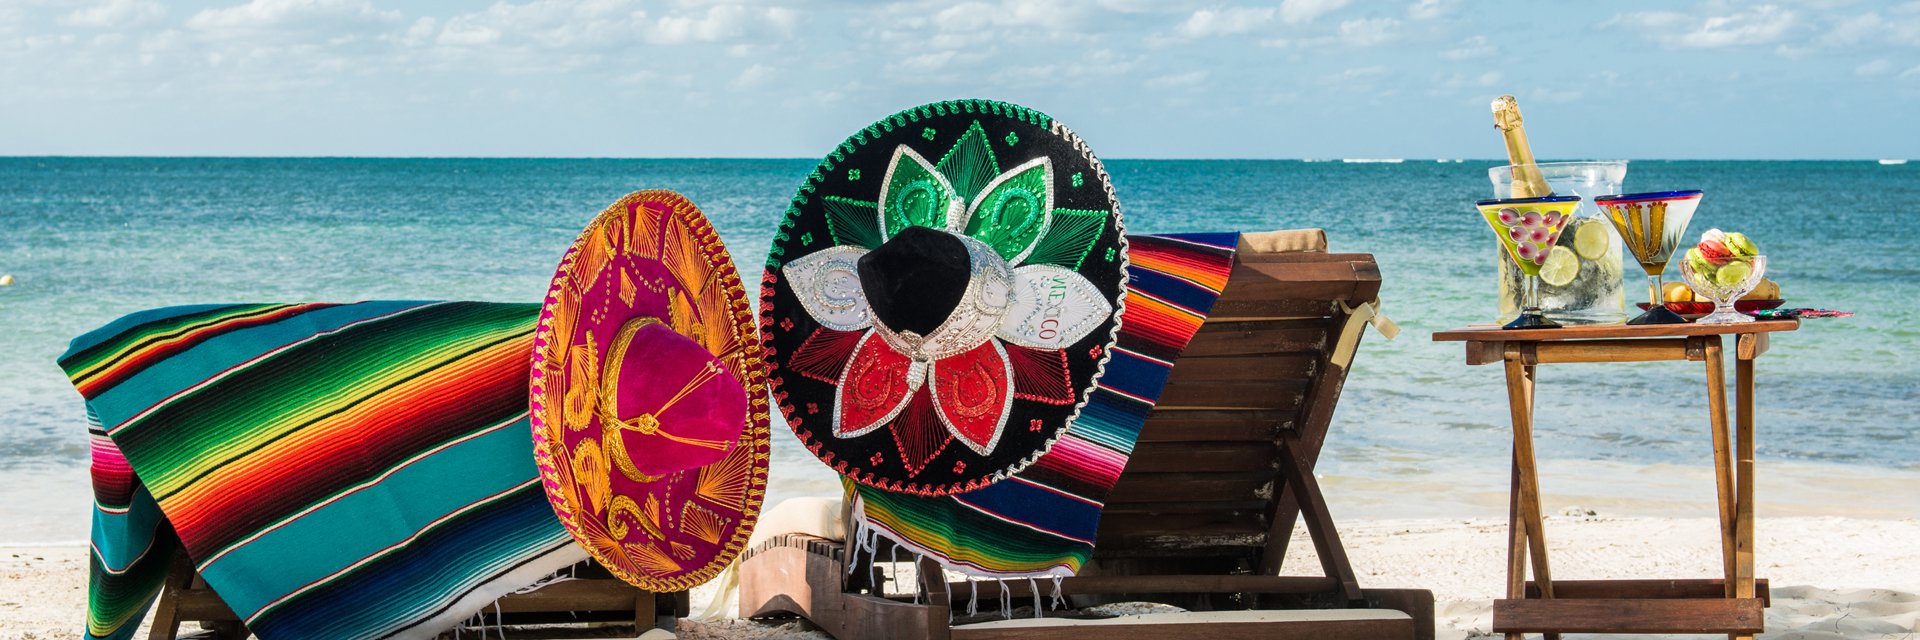 Oasis Cancun Lite 4* (П-ов Юкатан, Мексика) - цены, отзывы, фото, бронирование - ПАКС